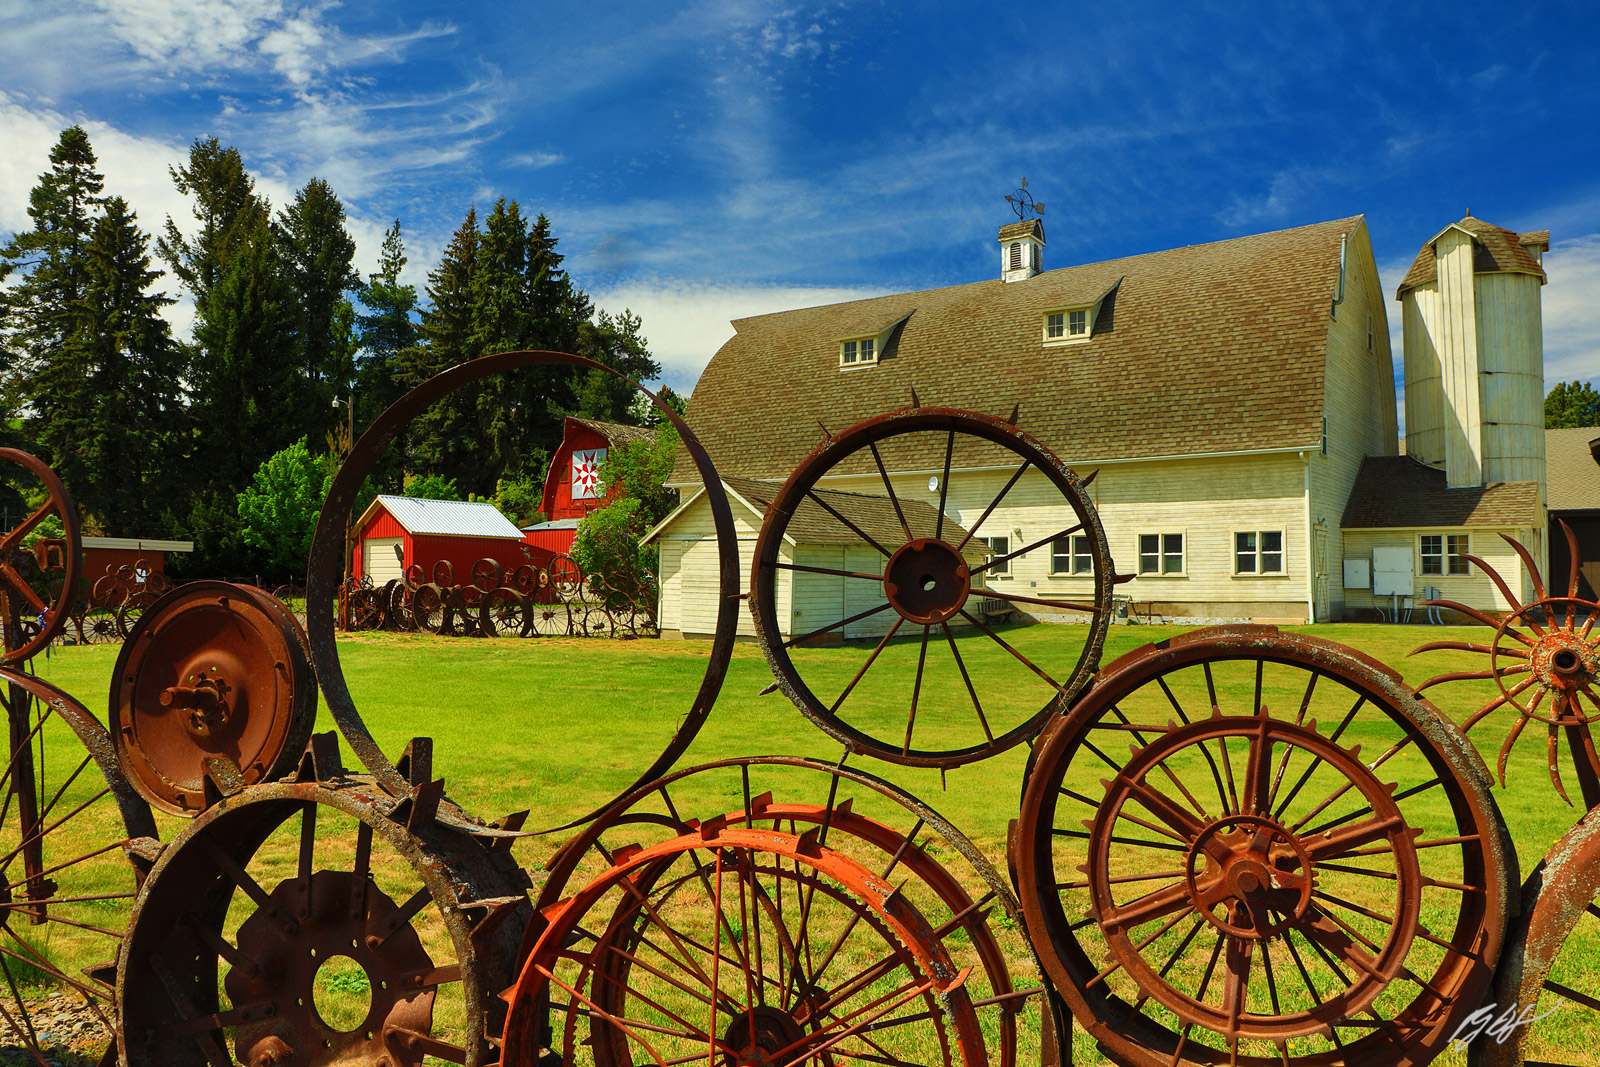 Wagon Wheel Art Barn in Union Town, Washington